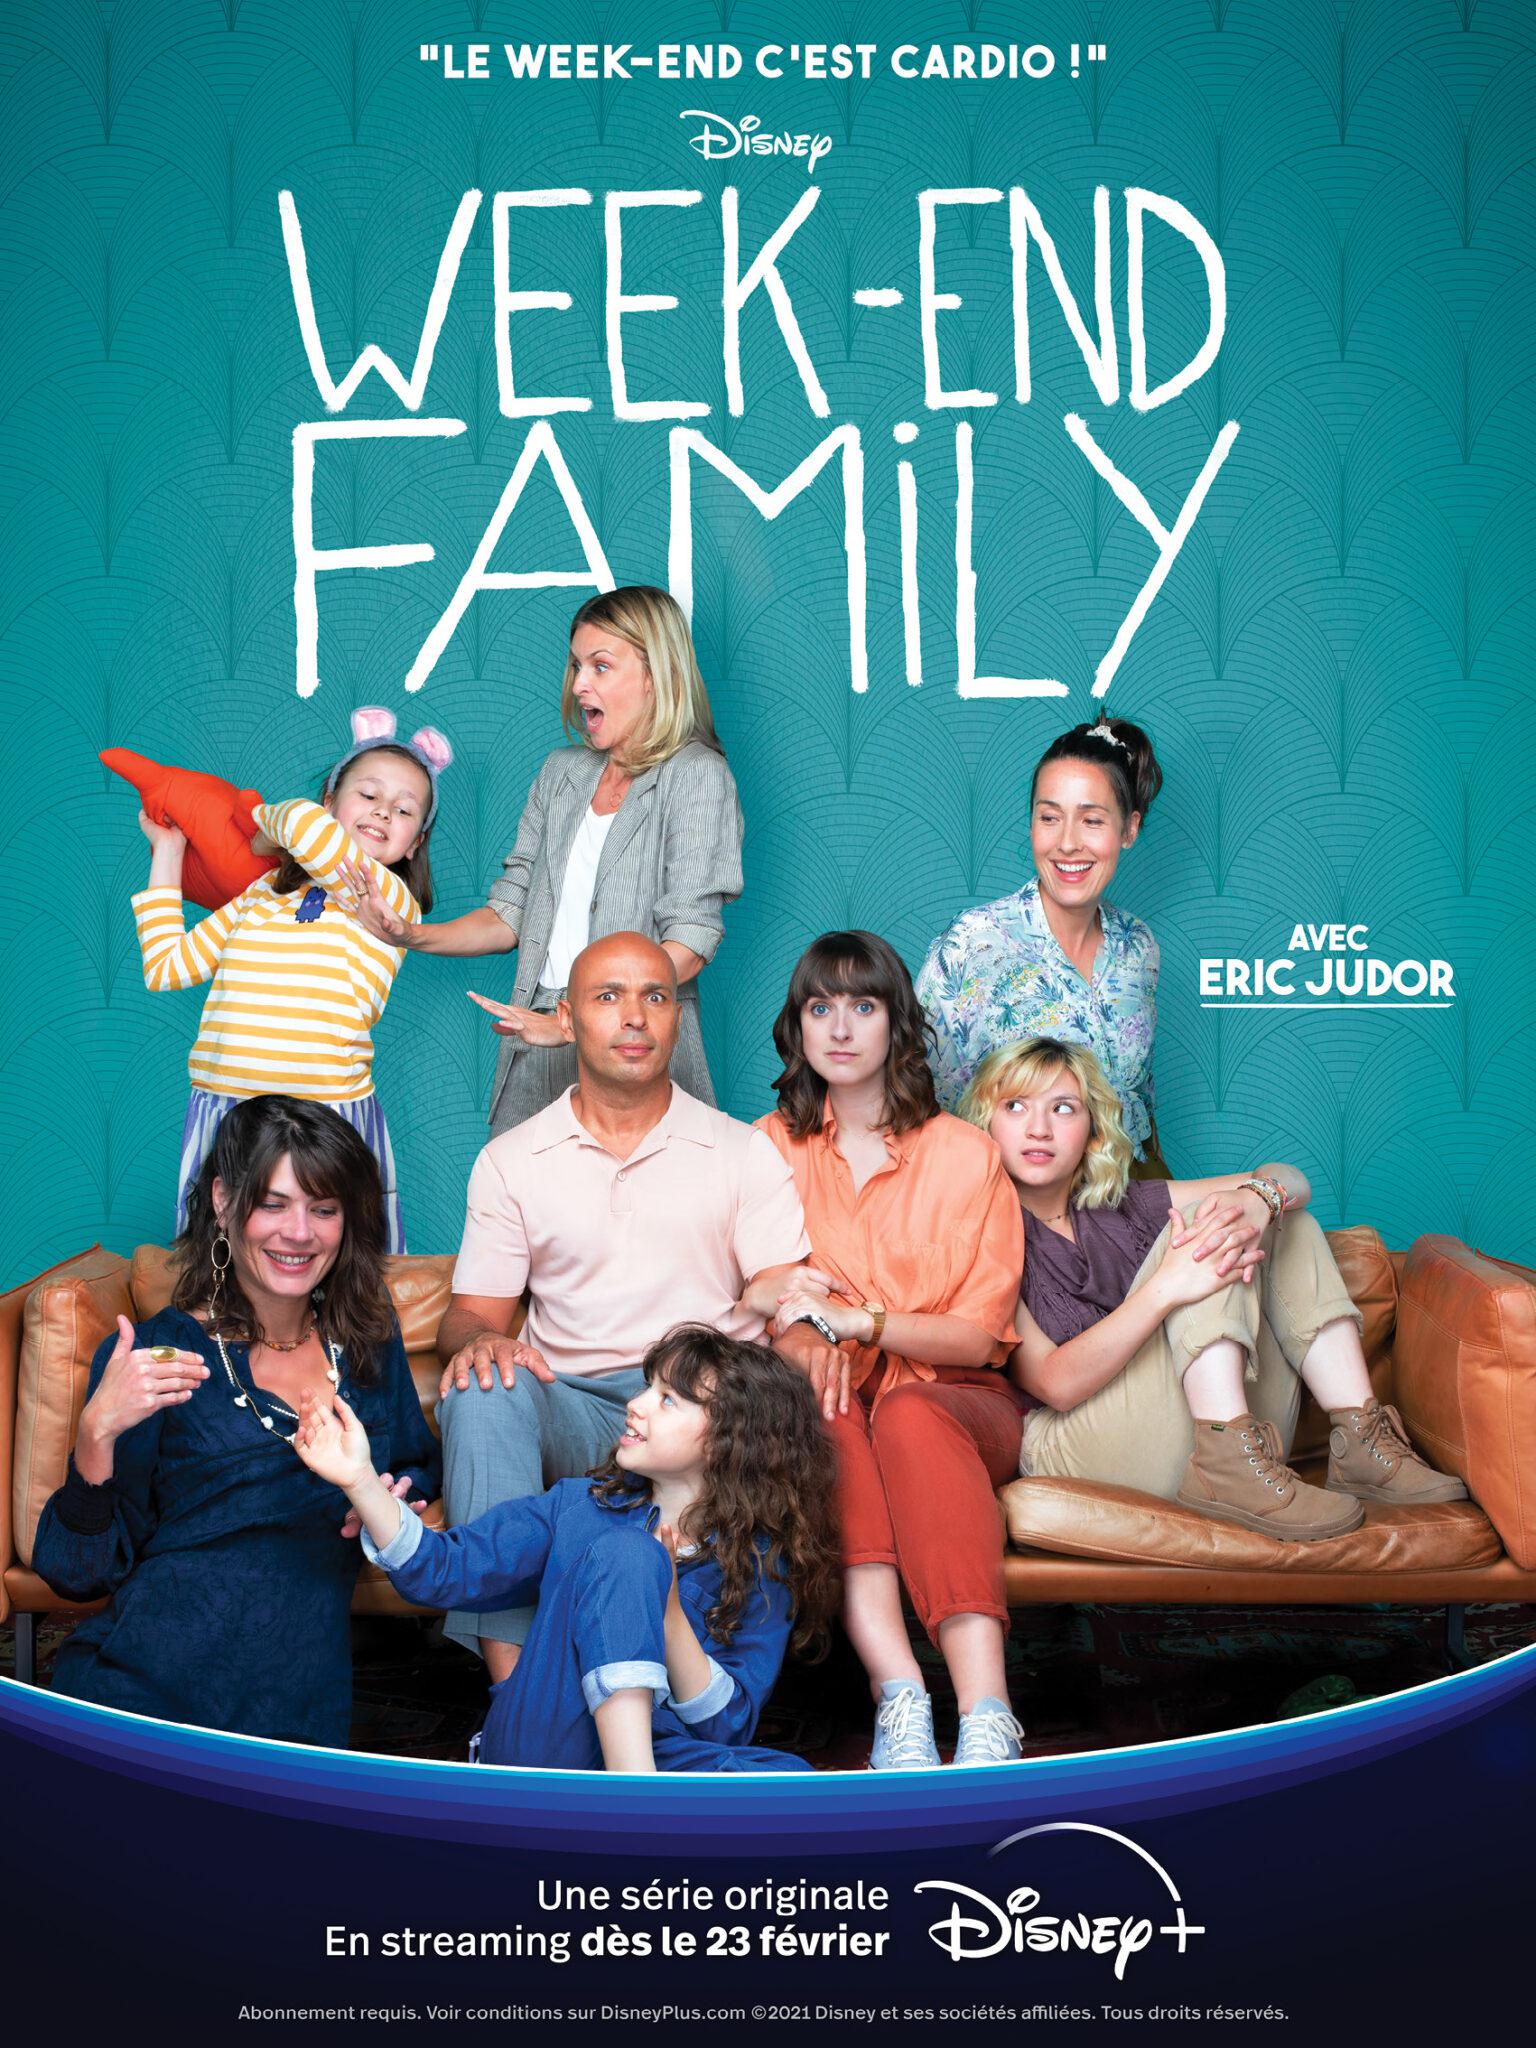 TV ratings for Weekend Family in Turquía. Disney+ TV series